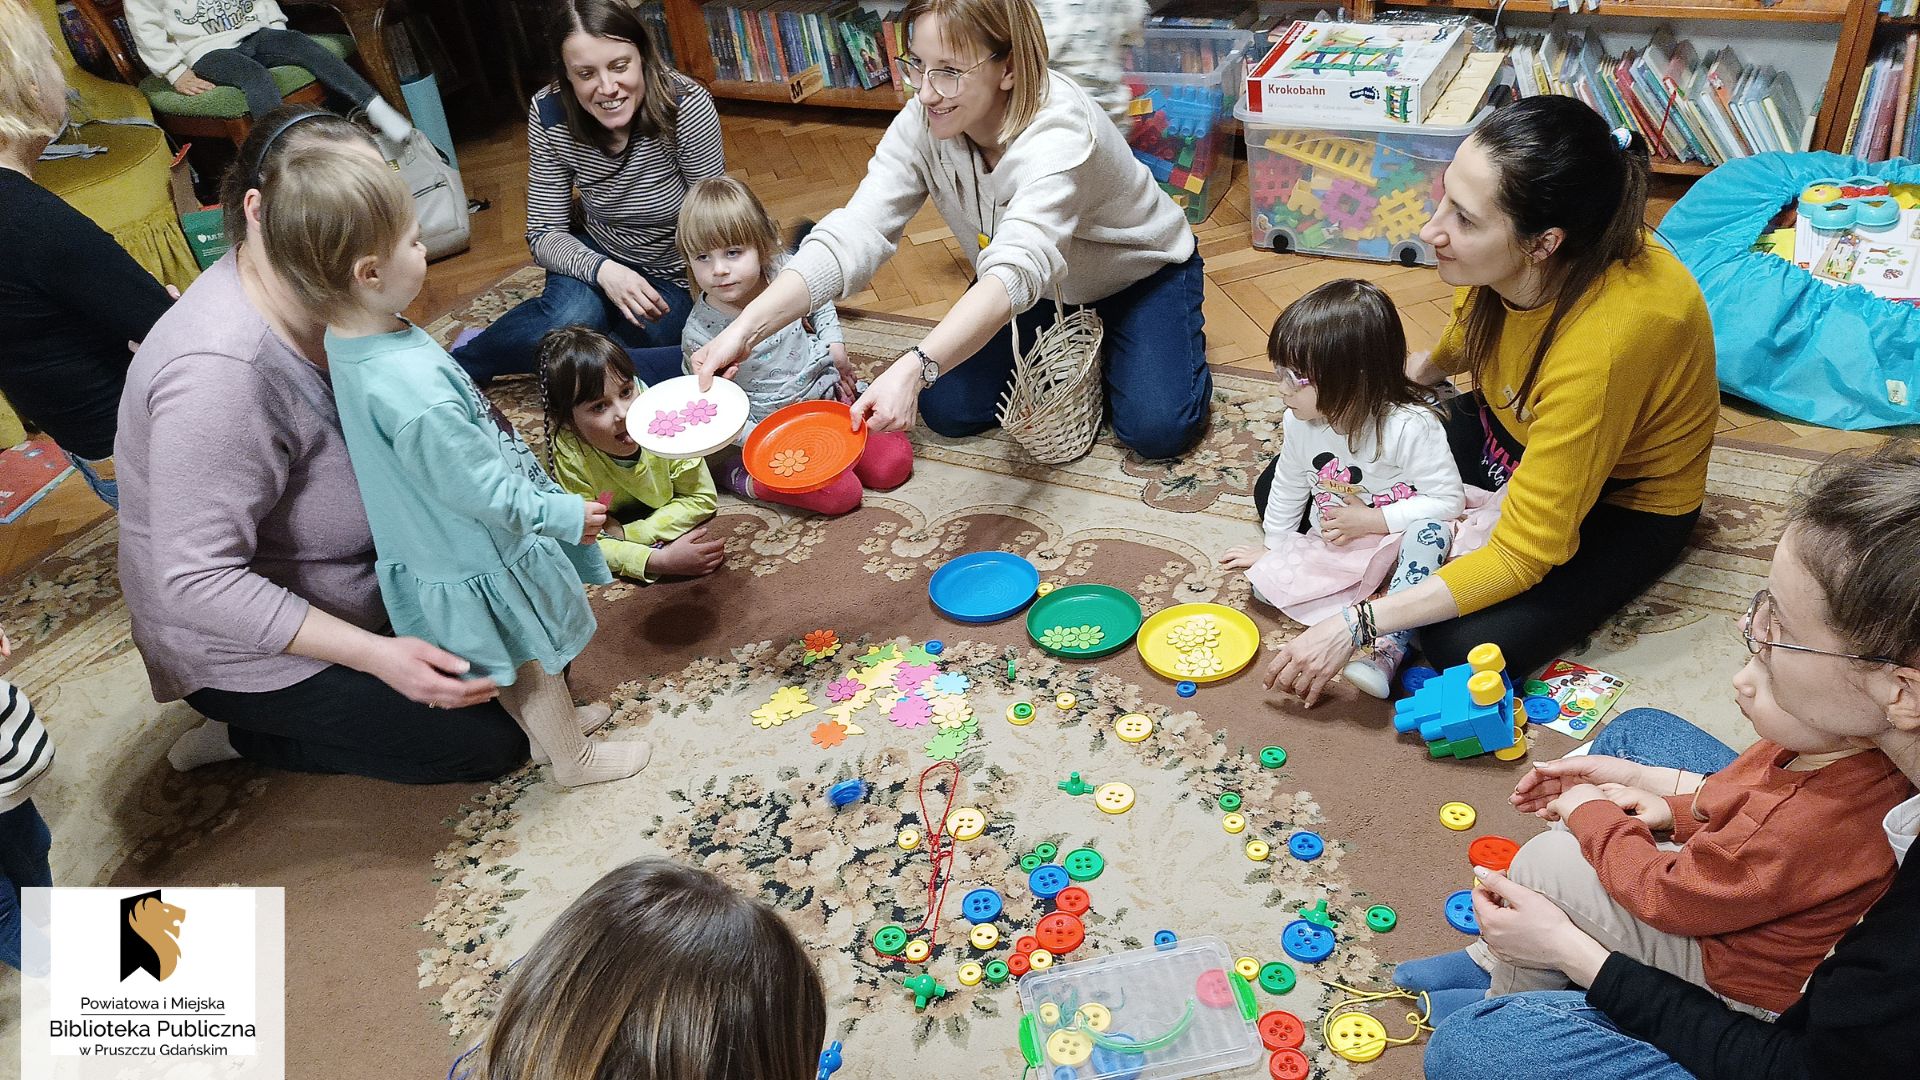 Na dywanie siedzą dzieci i rodzice. Lężą kolorowe talerzyki, rozsypane kolorowe guziki. Bibliotekarka wyciąga ręce z dwoma talerzykami do stojącego dziecka.